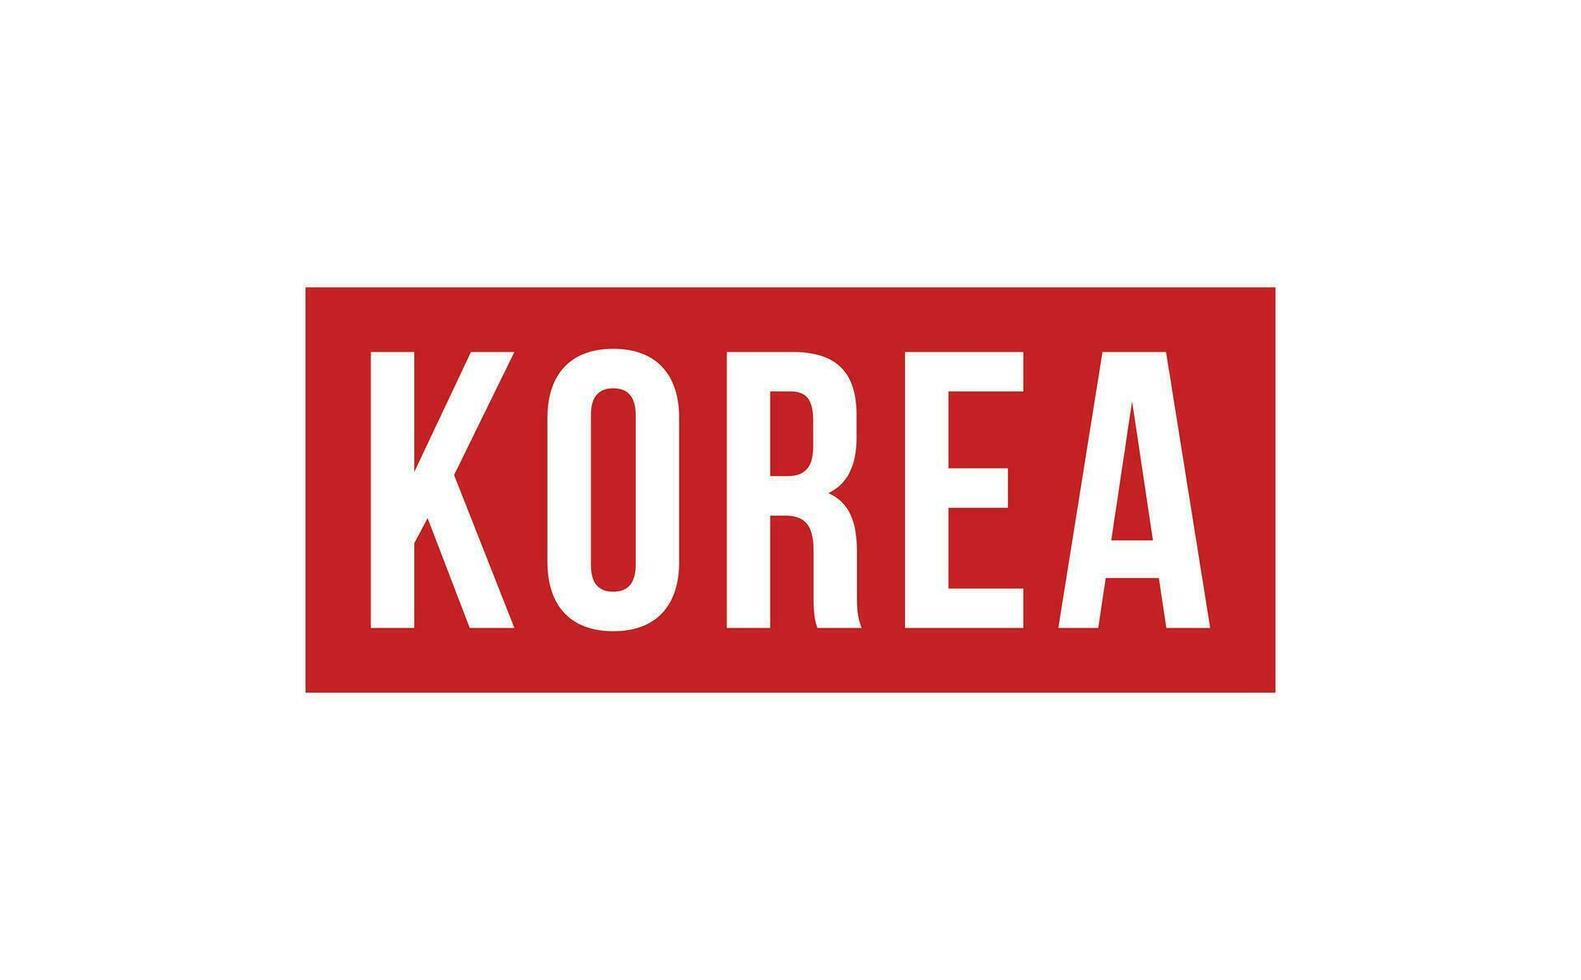 Corea gomma da cancellare francobollo foca vettore